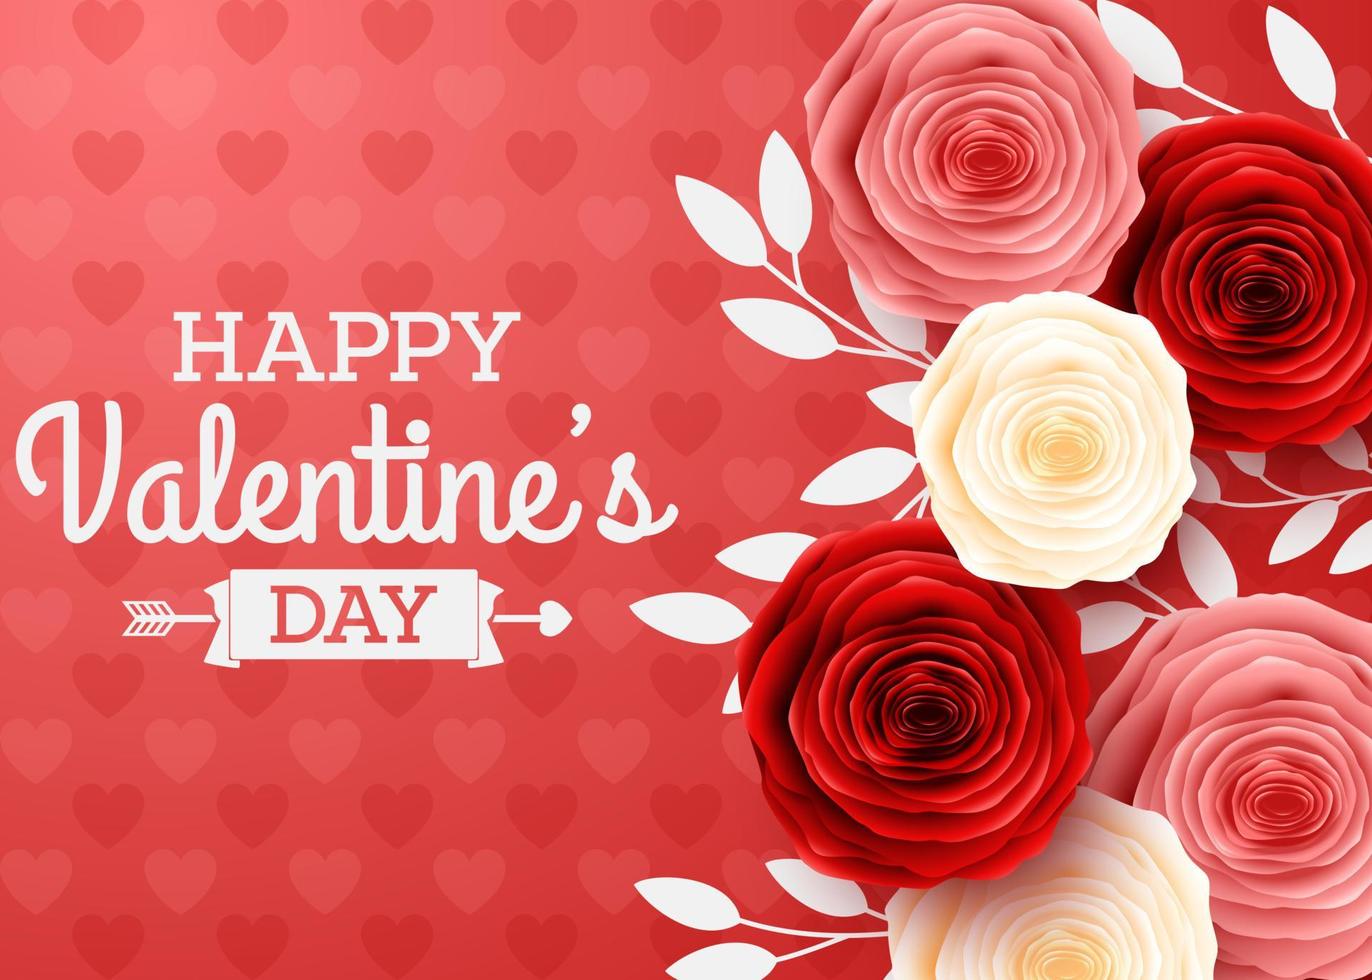 cartão de dia dos namorados com fundo de flores e corações rosa vetor